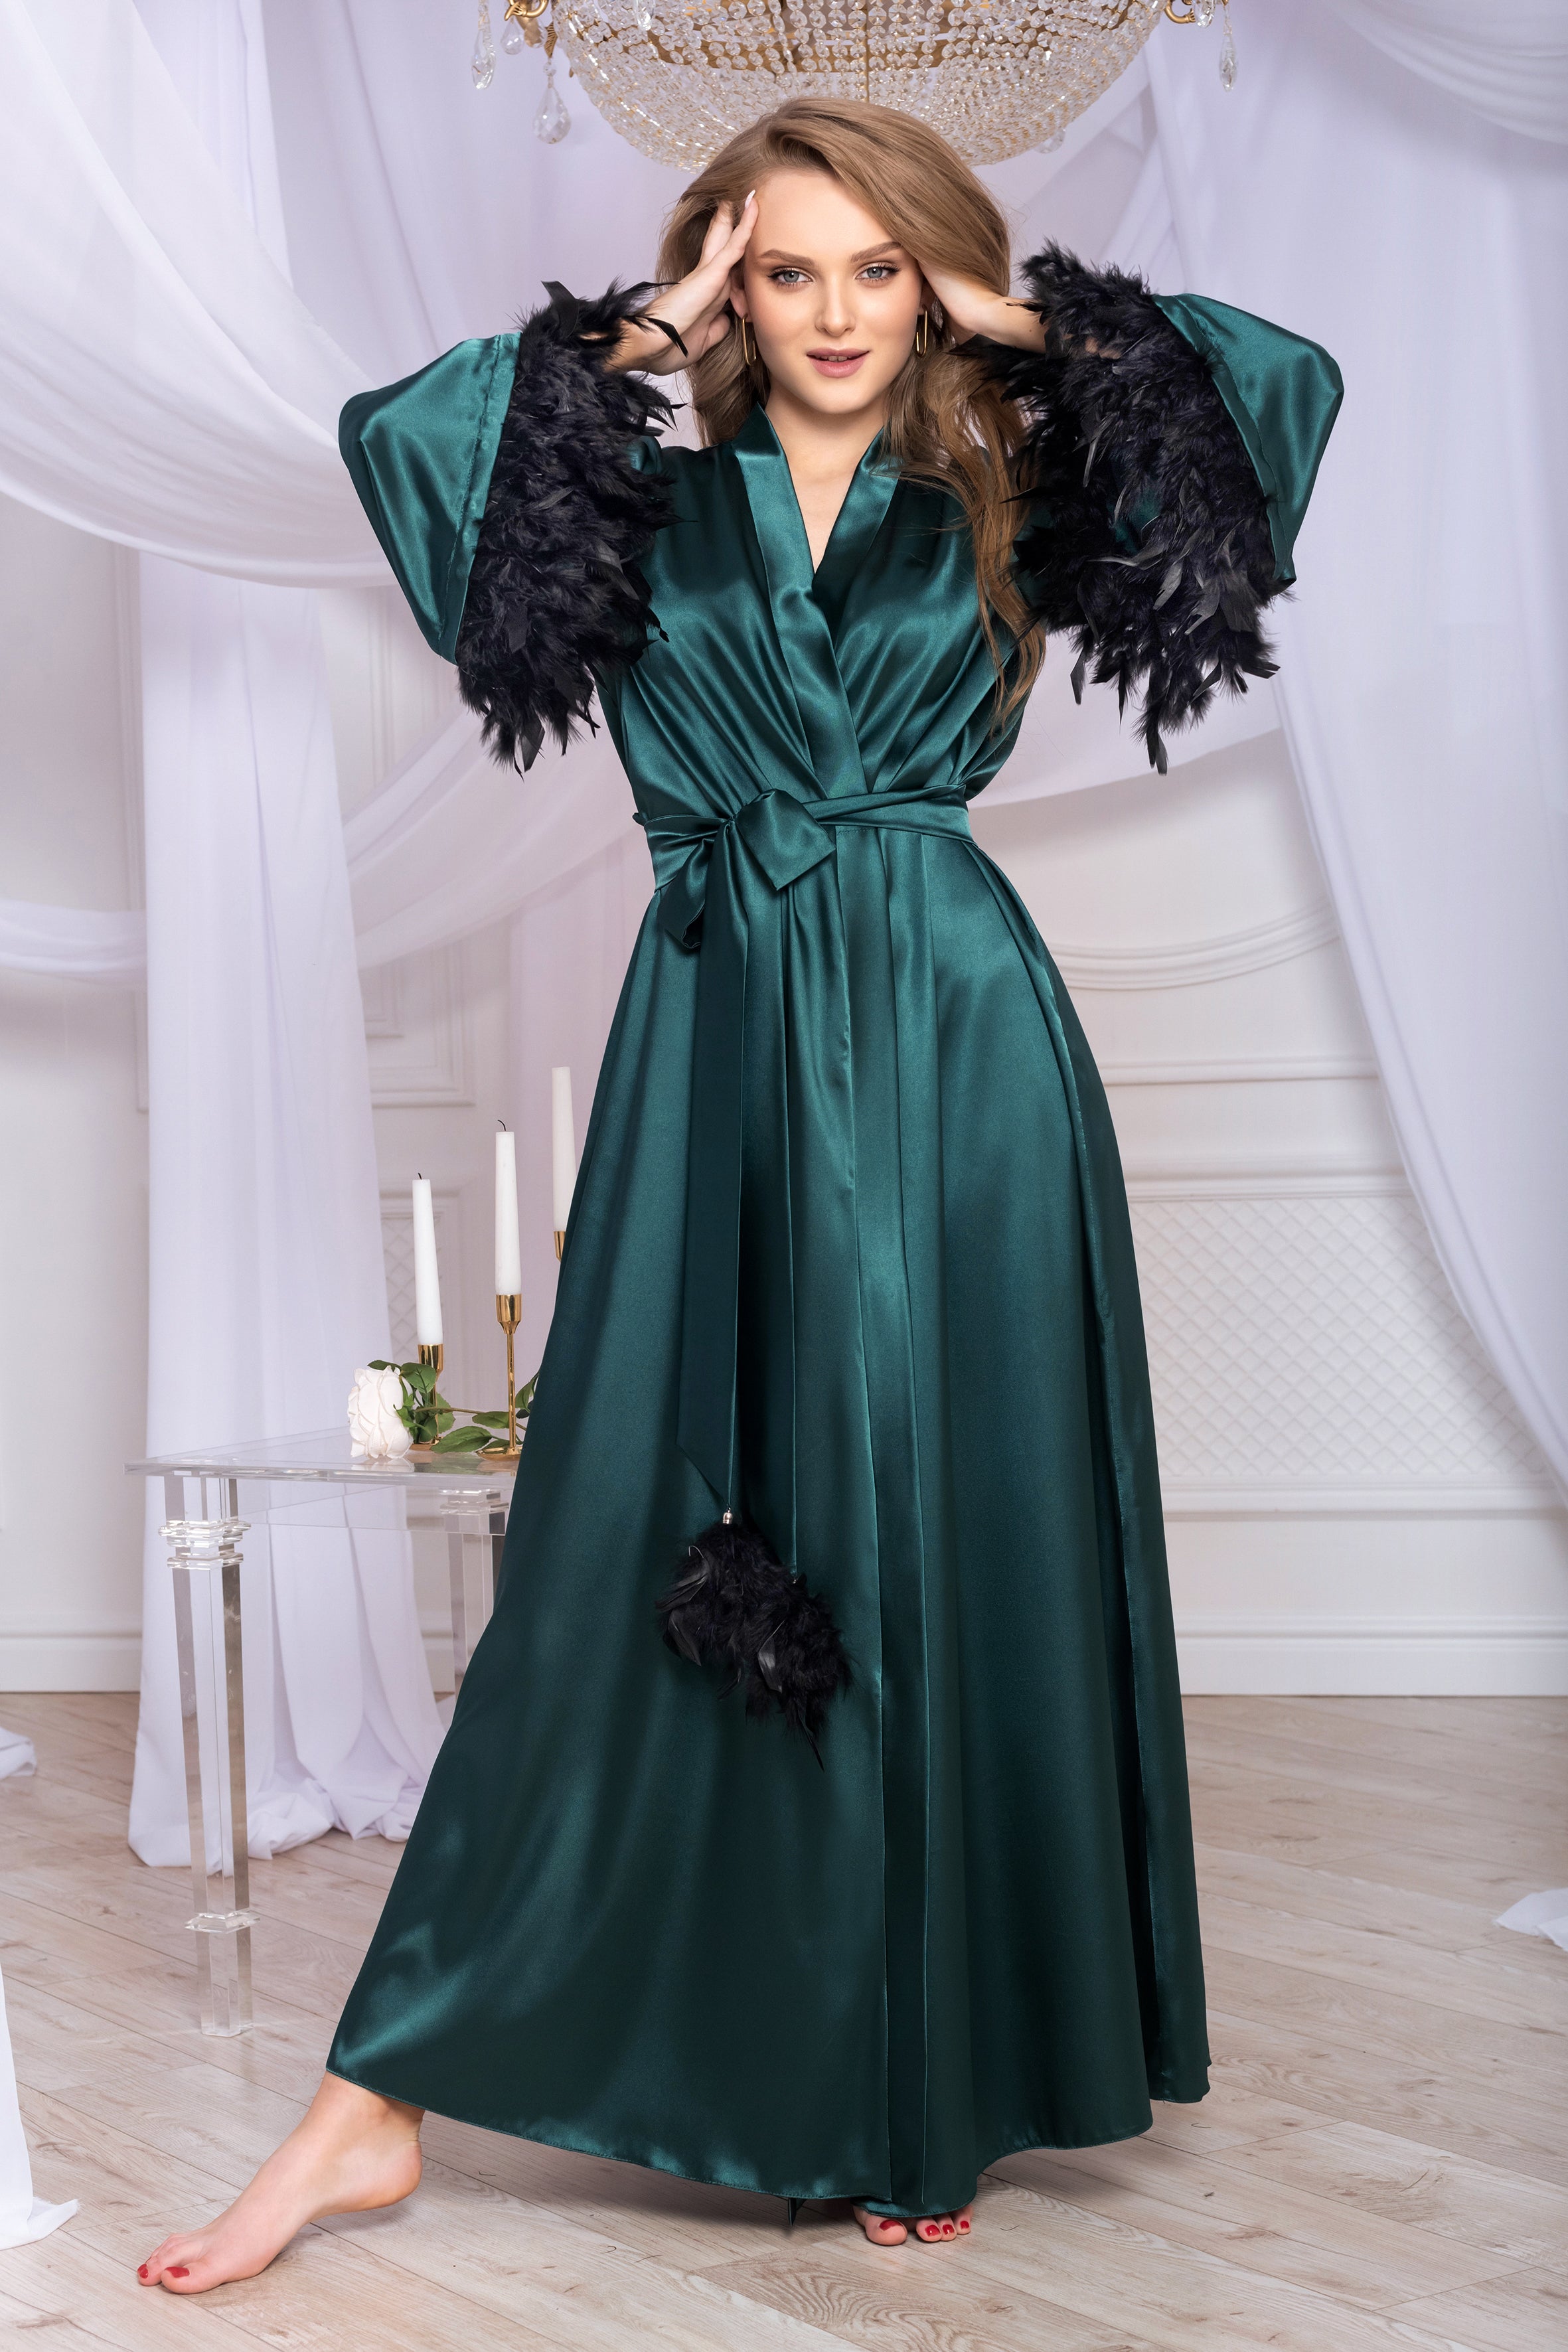 Feather trim boudoir robe Green satin